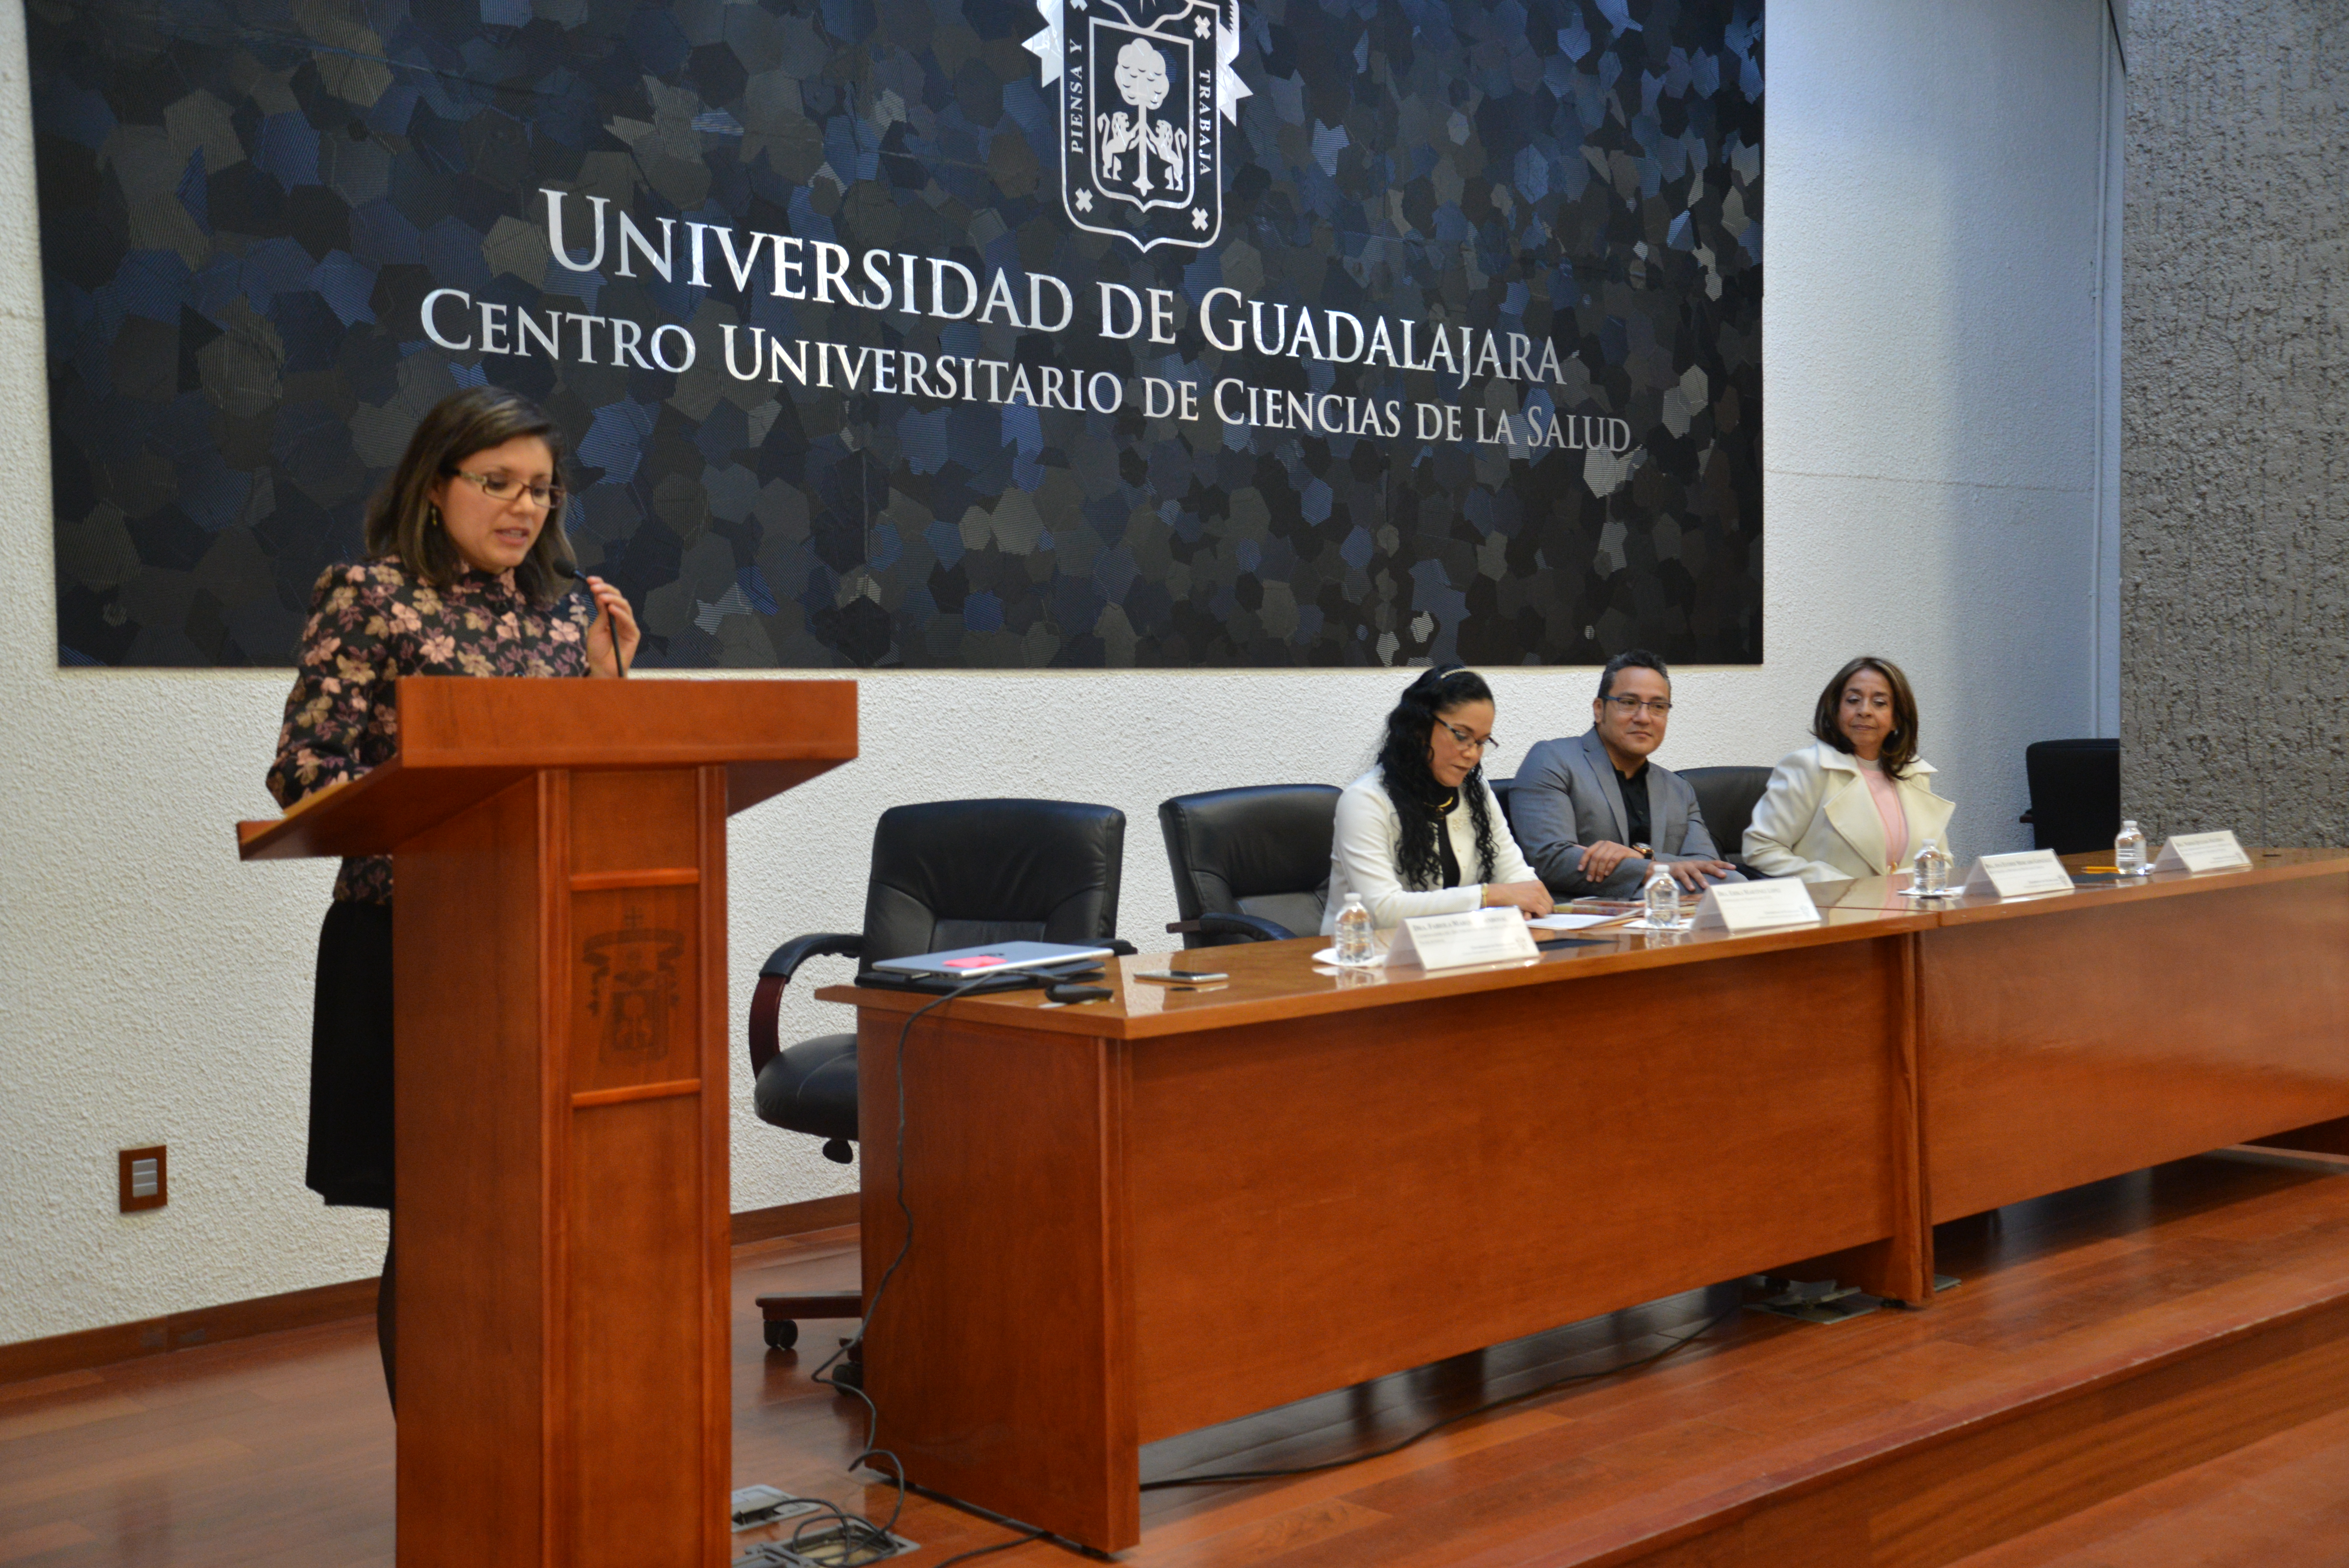 Dra. Fabiola Márquez en el podium y atrás los miembros del presídium